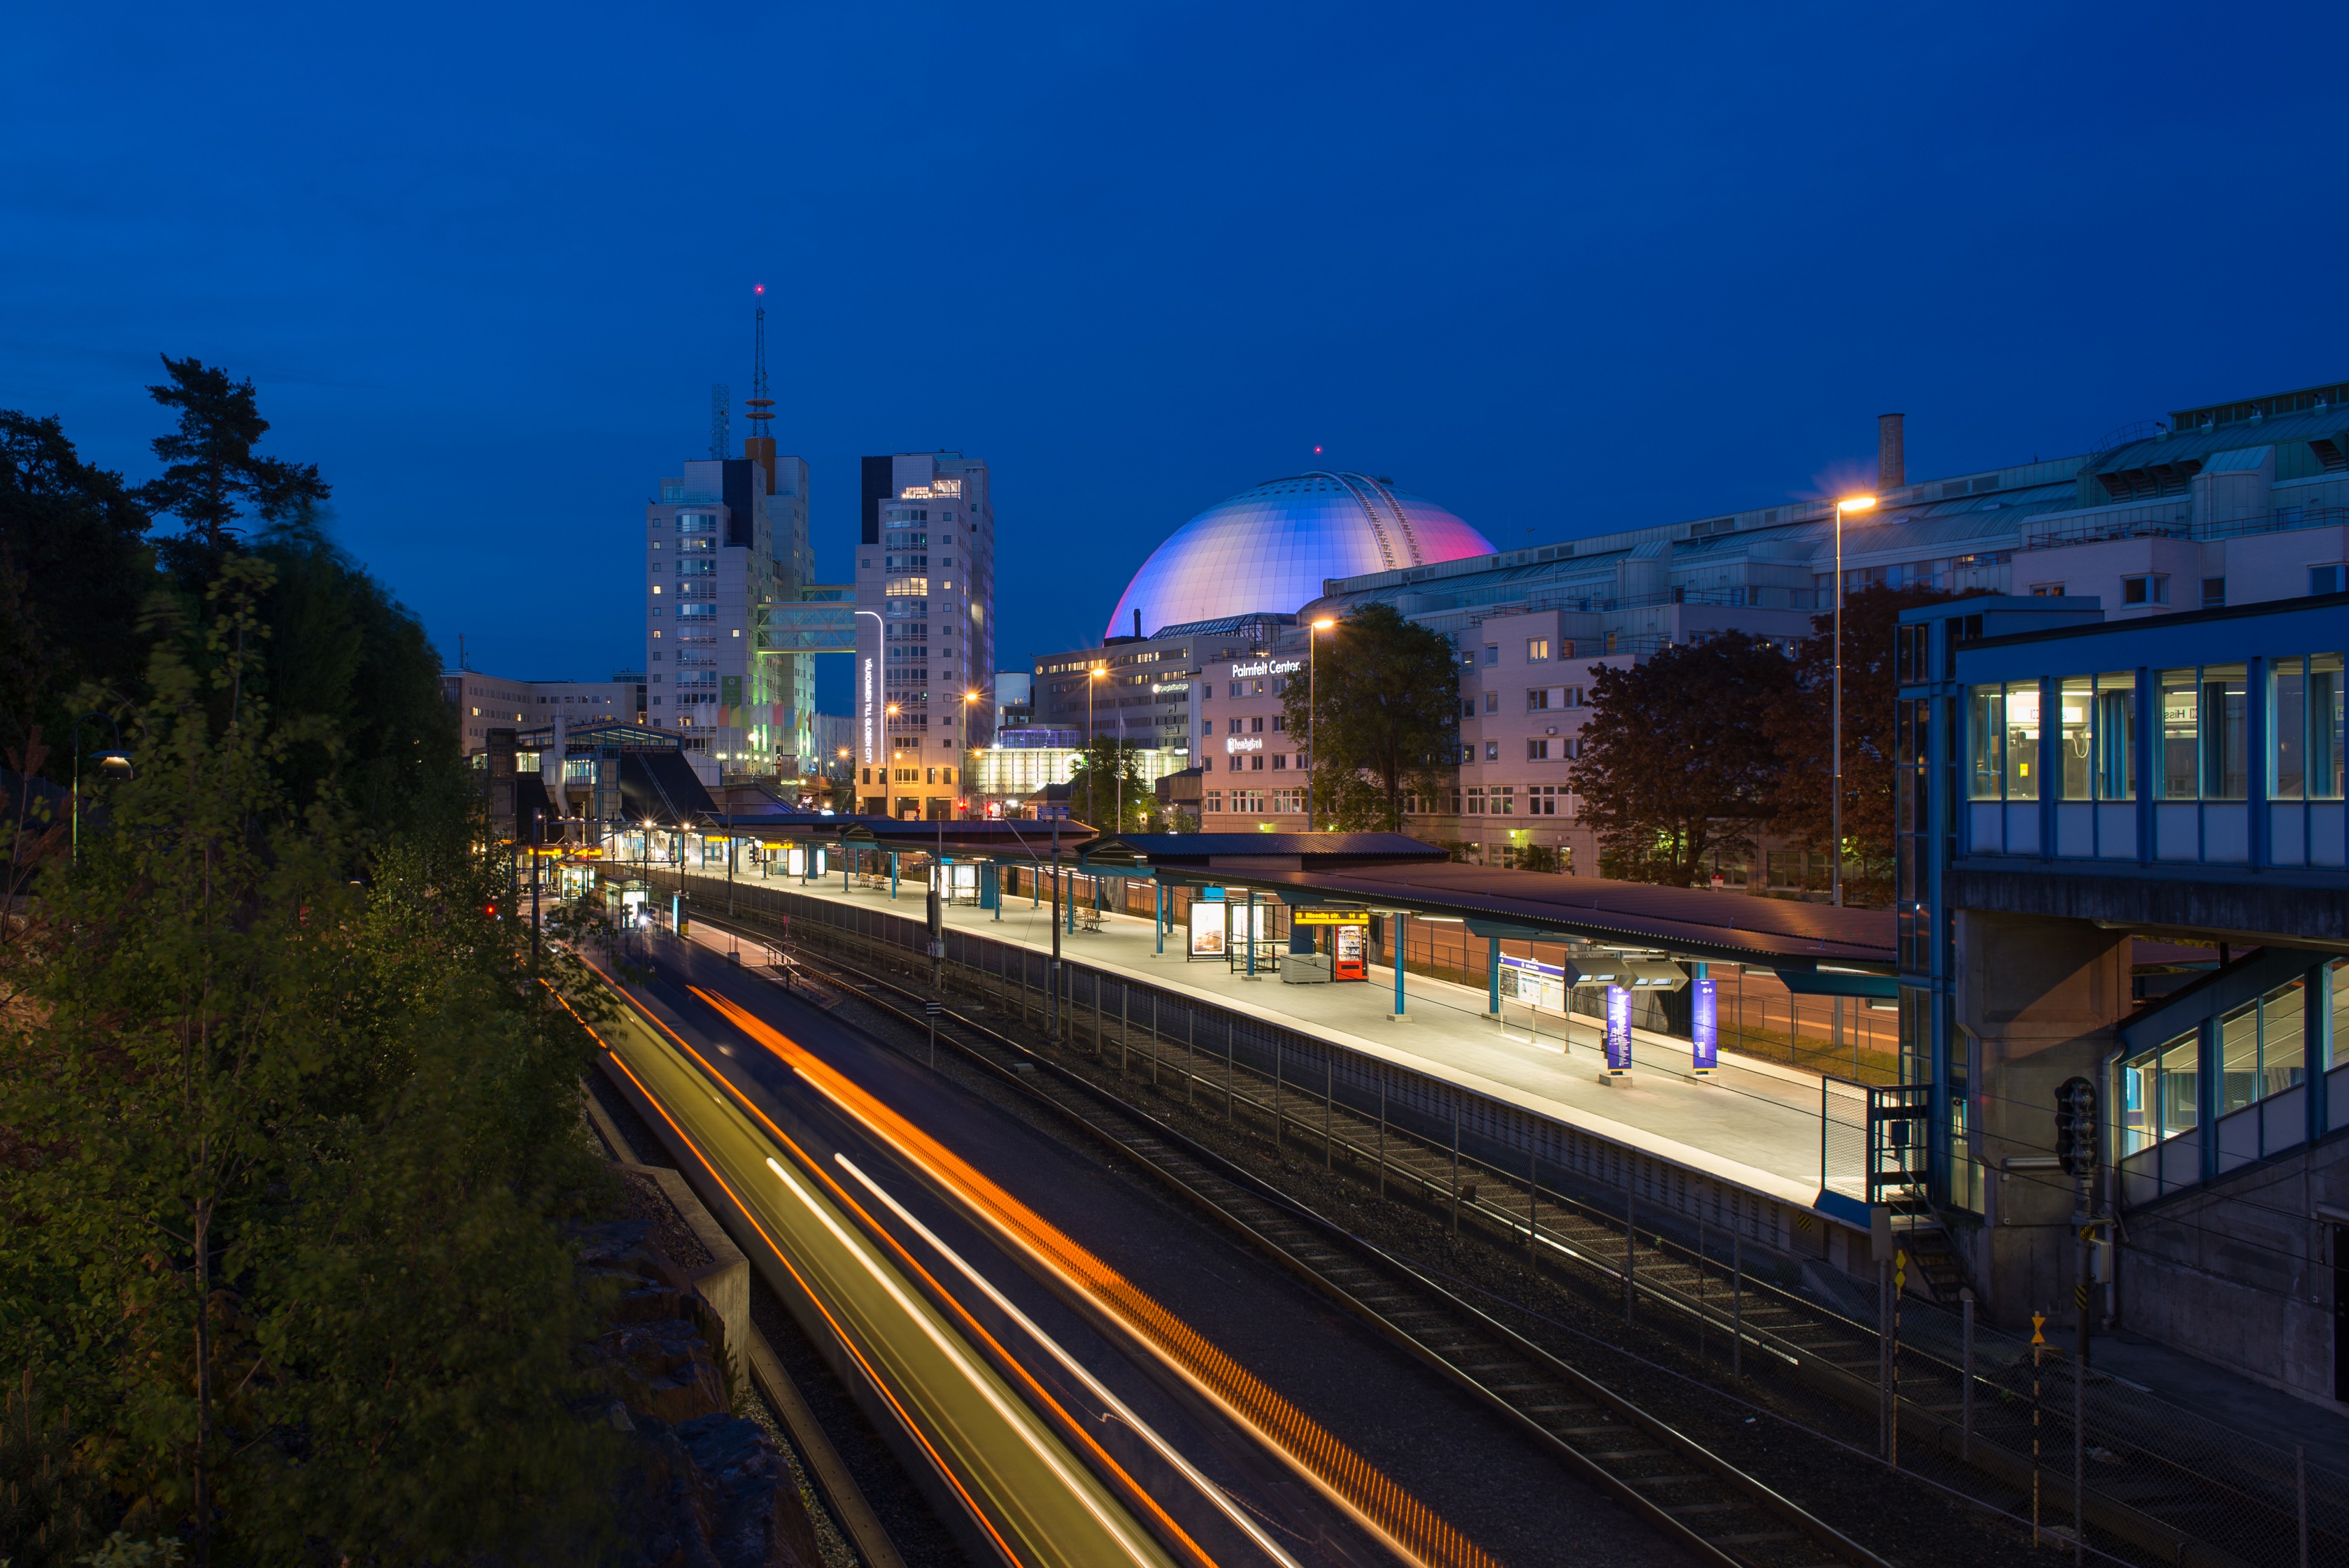 Globen metro station May 2016